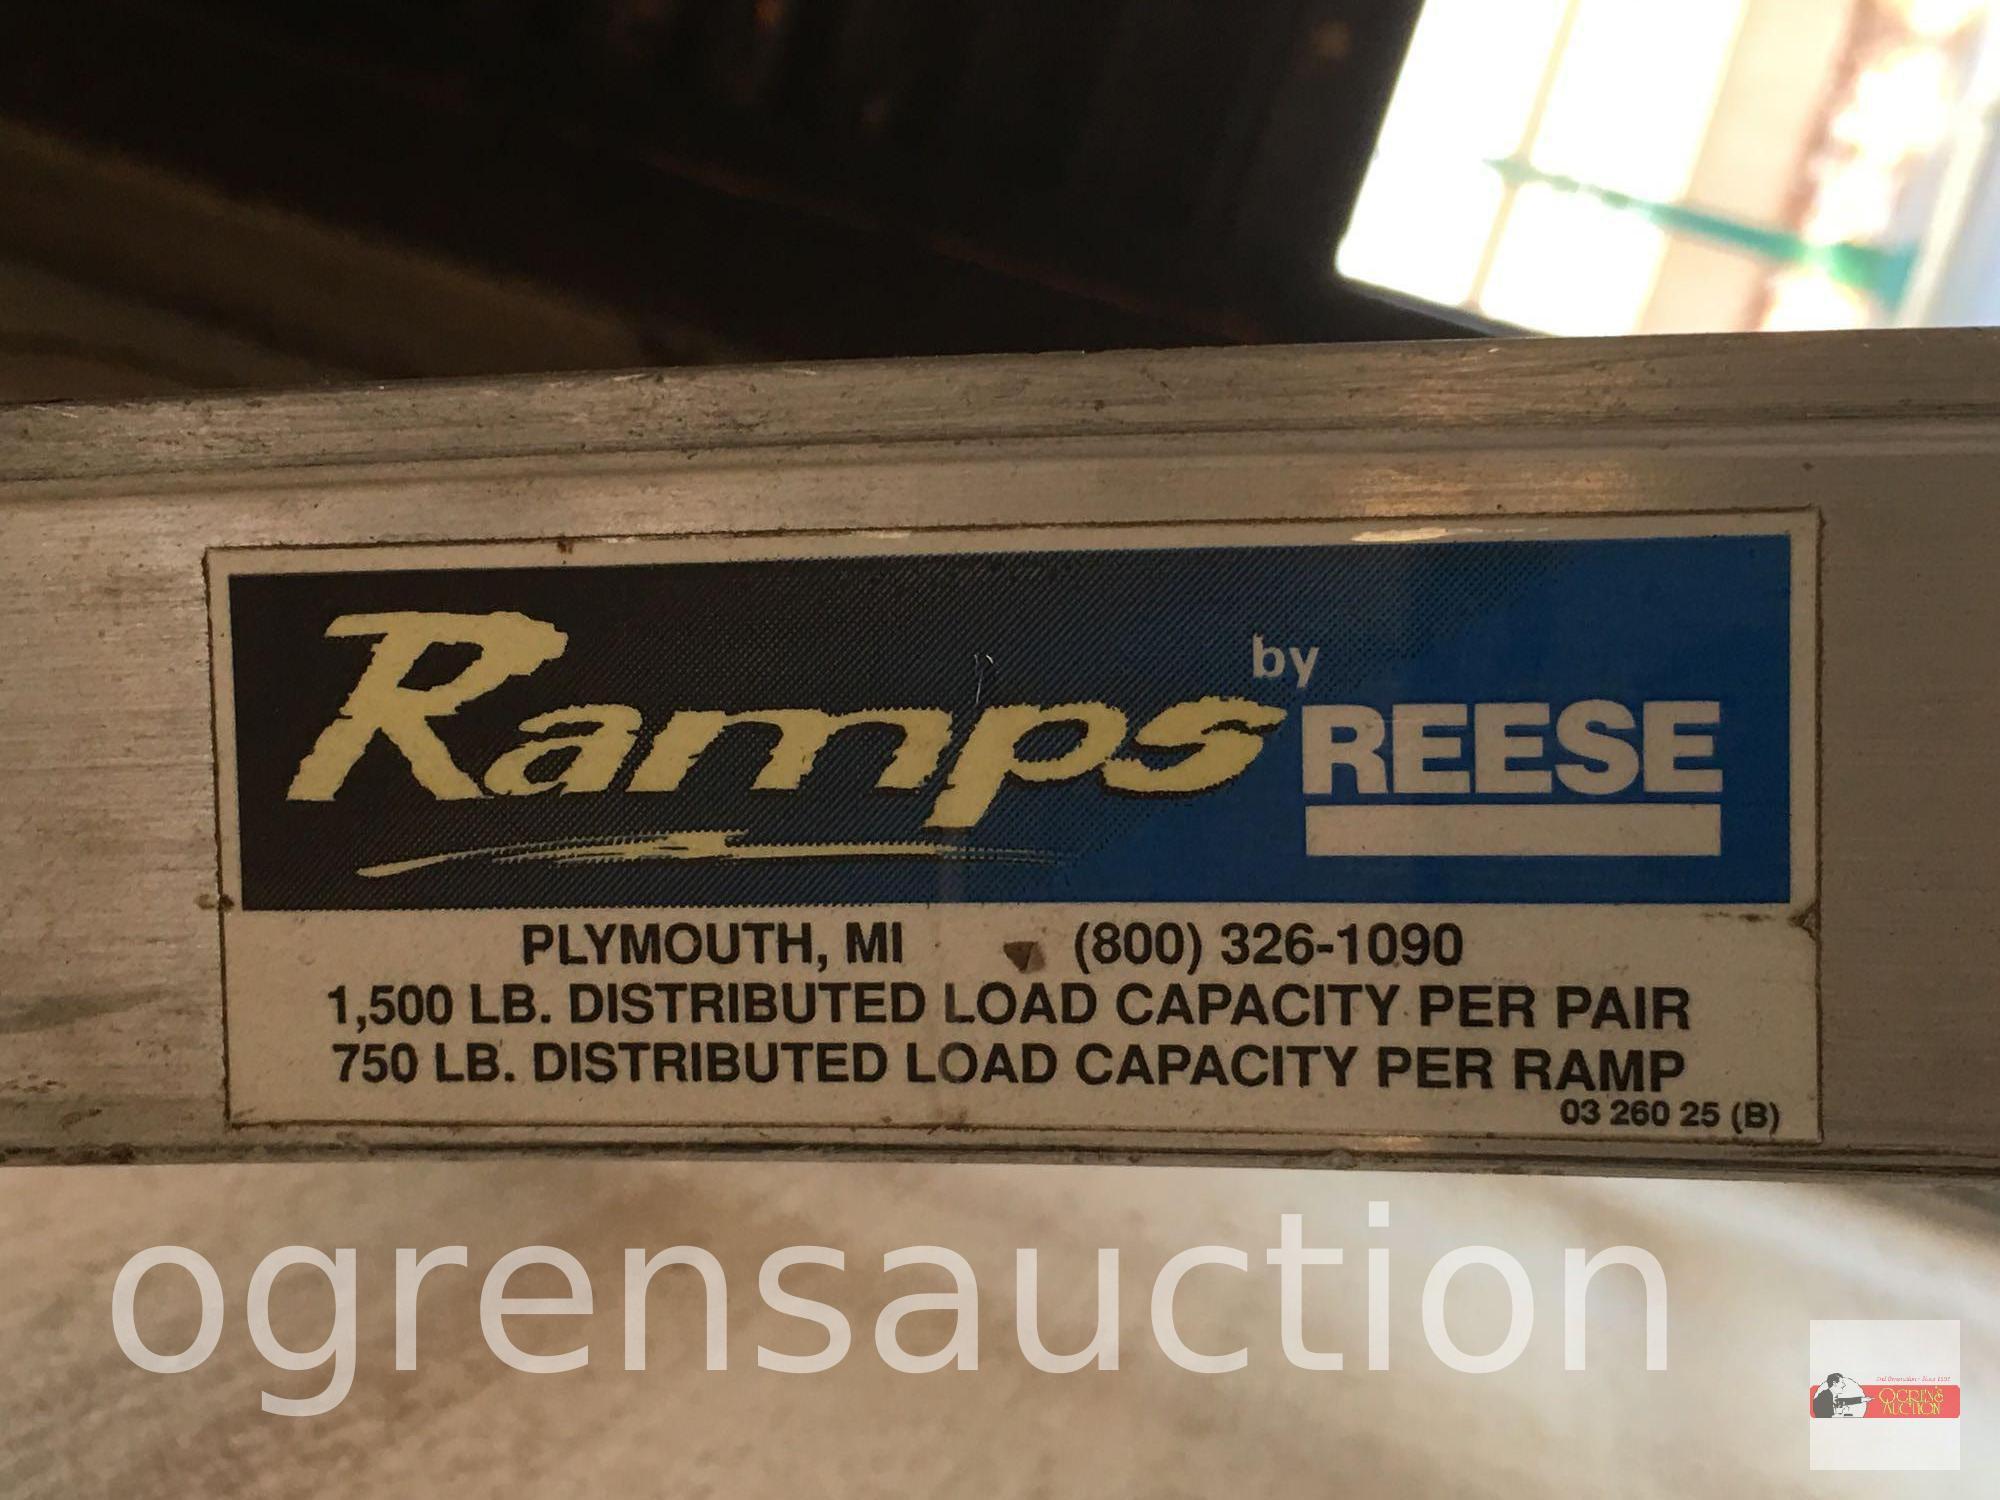 2 Ramps - Reese Ramps 1500 lb. distributed load capacity per pair, 750 lb. per ramp, 88"x12"